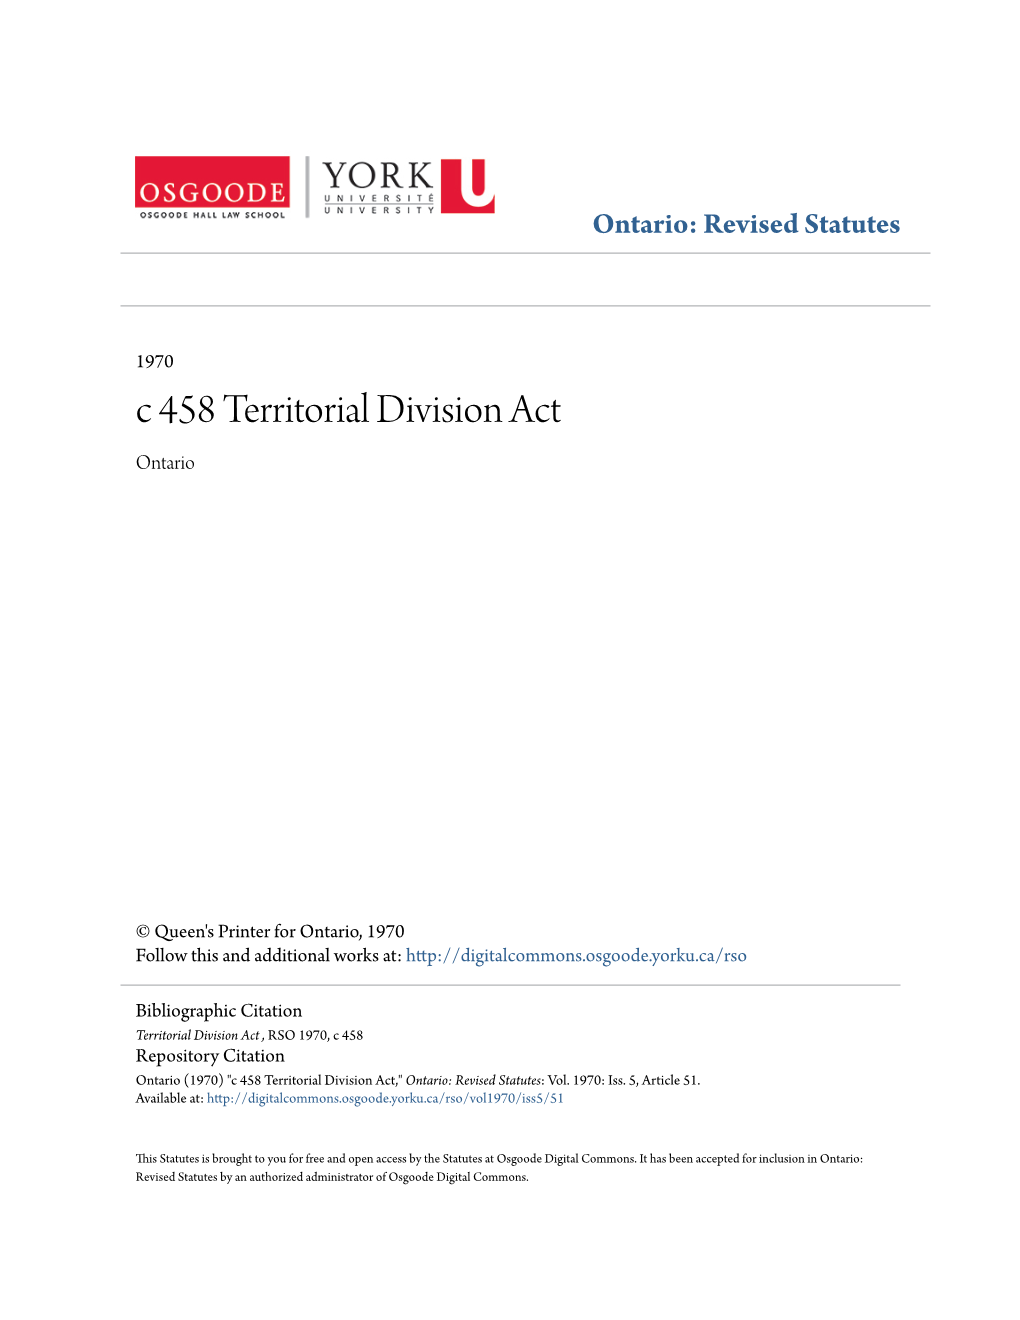 C 458 Territorial Division Act Ontario